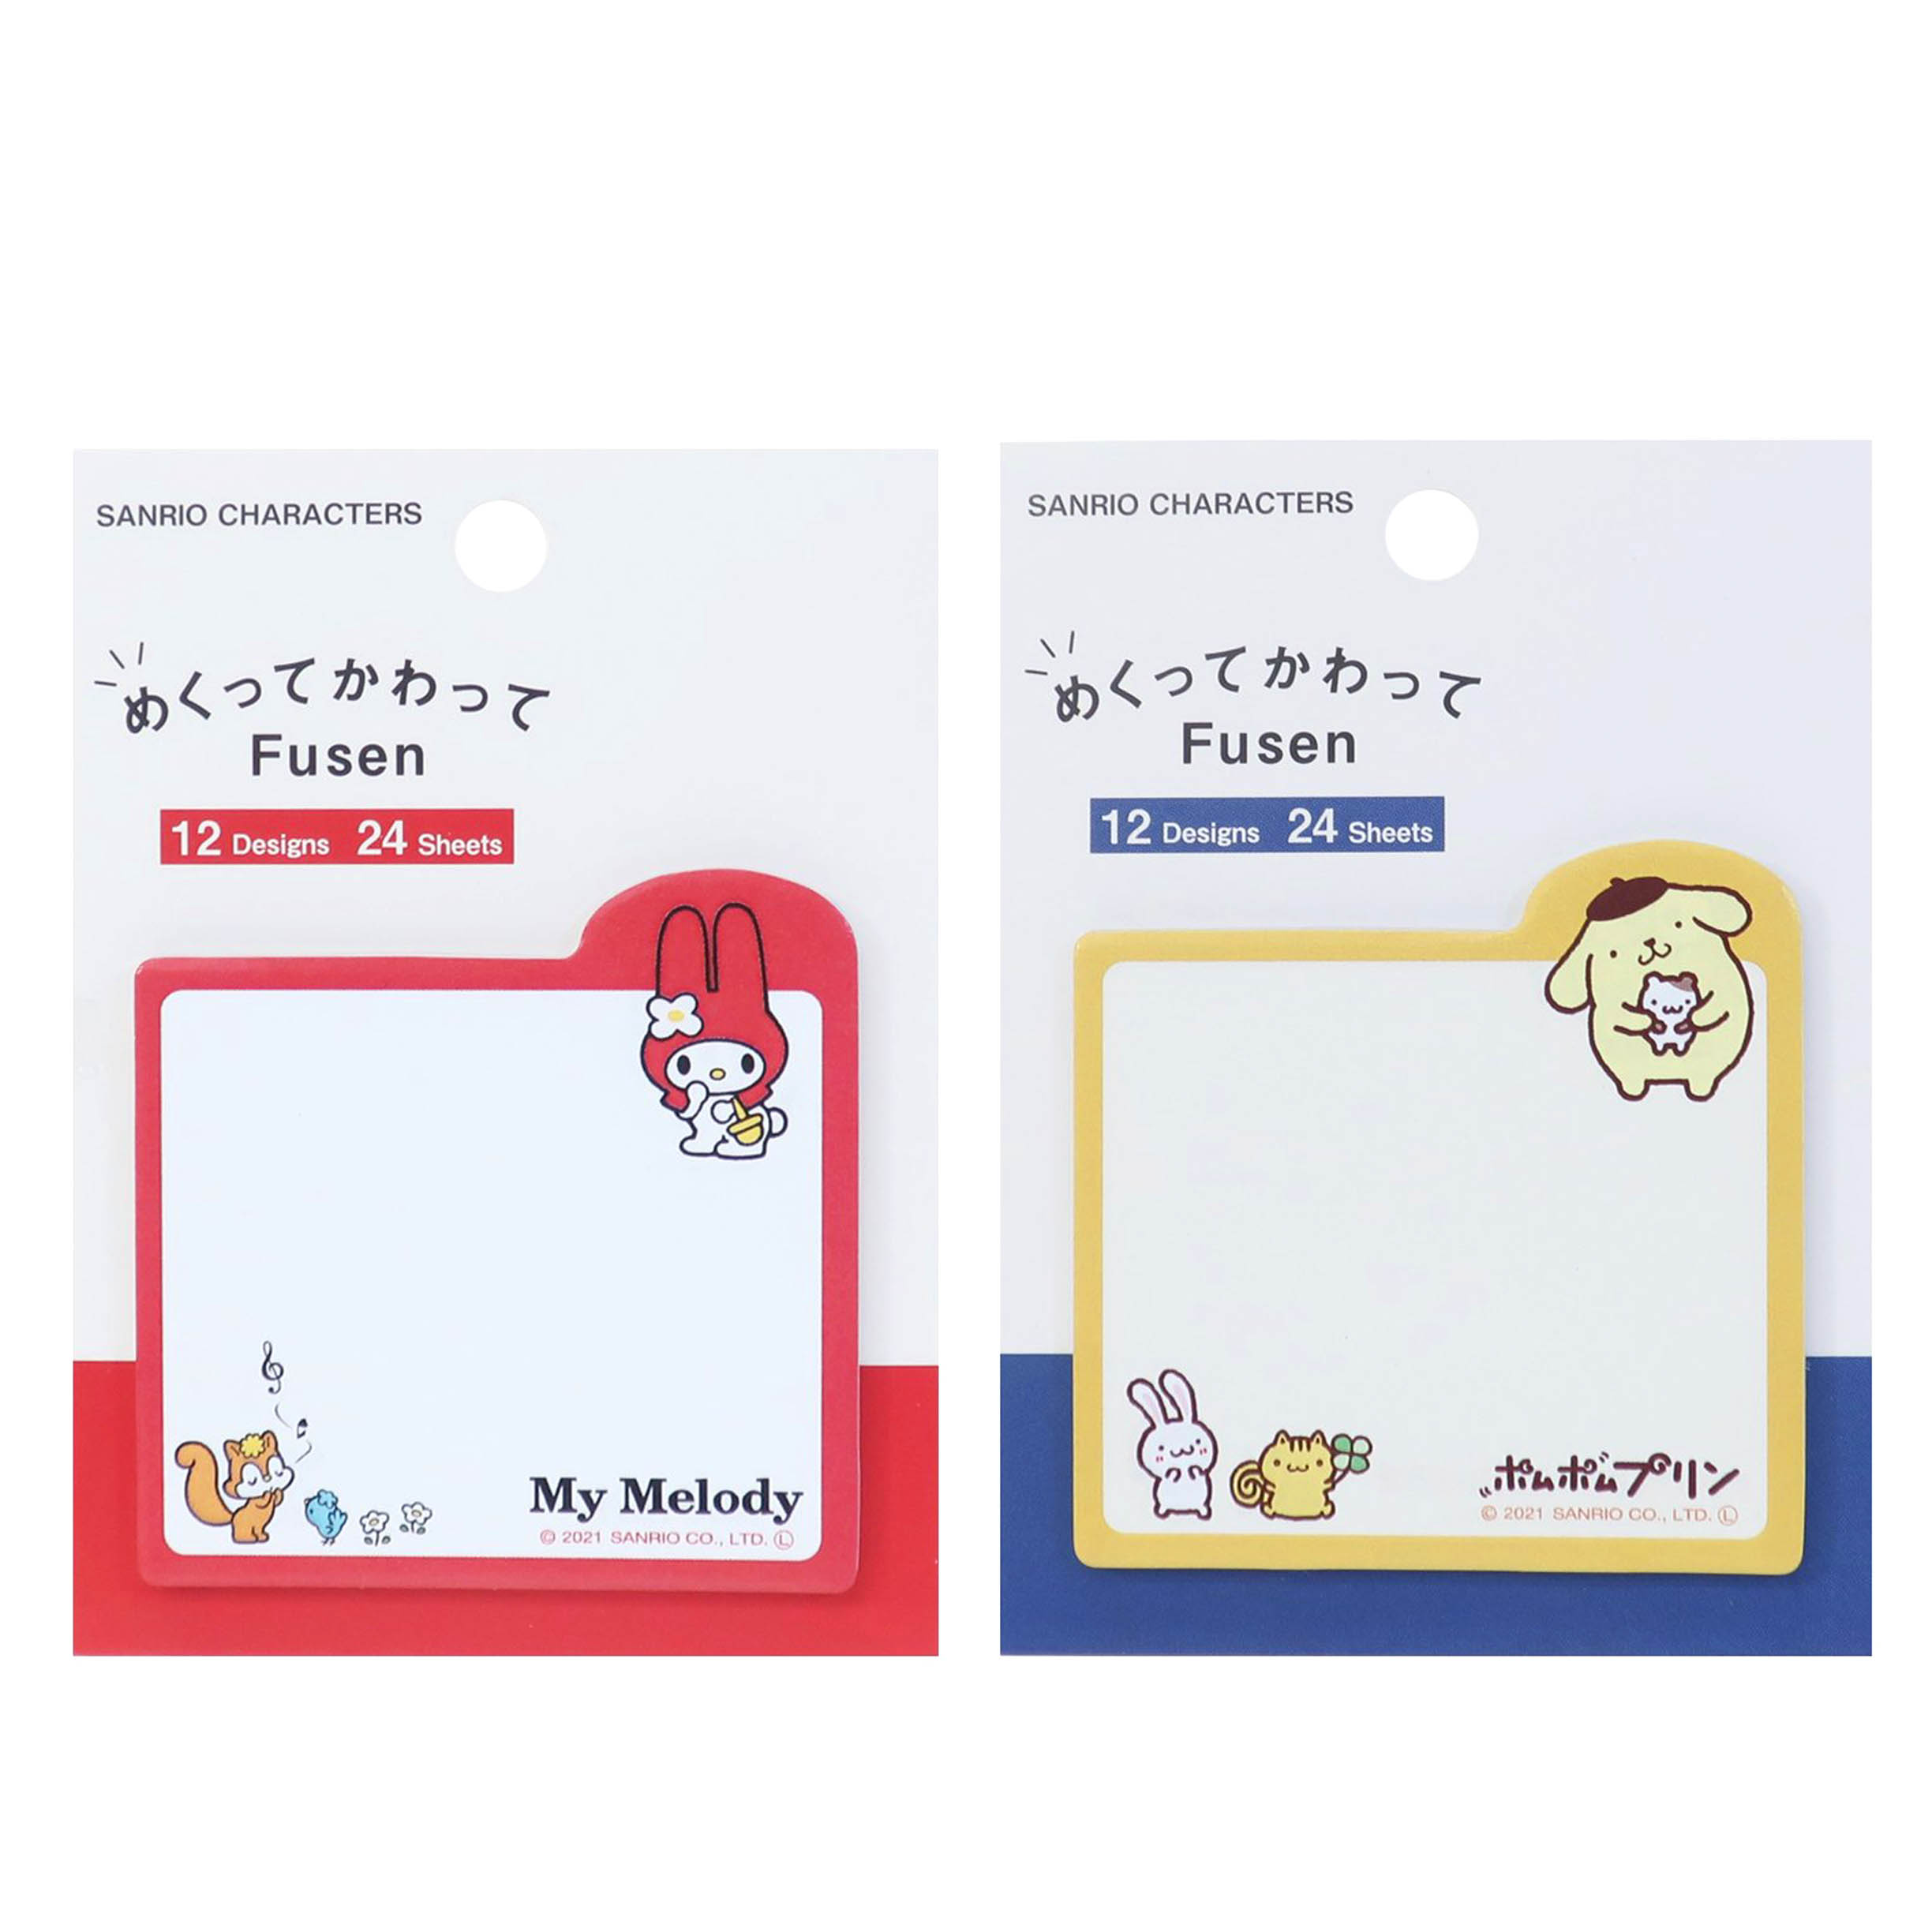 造型自黏便利貼-角色大集合 Sanrio Characters 三麗鷗 Sanrio 日本進口正版授權